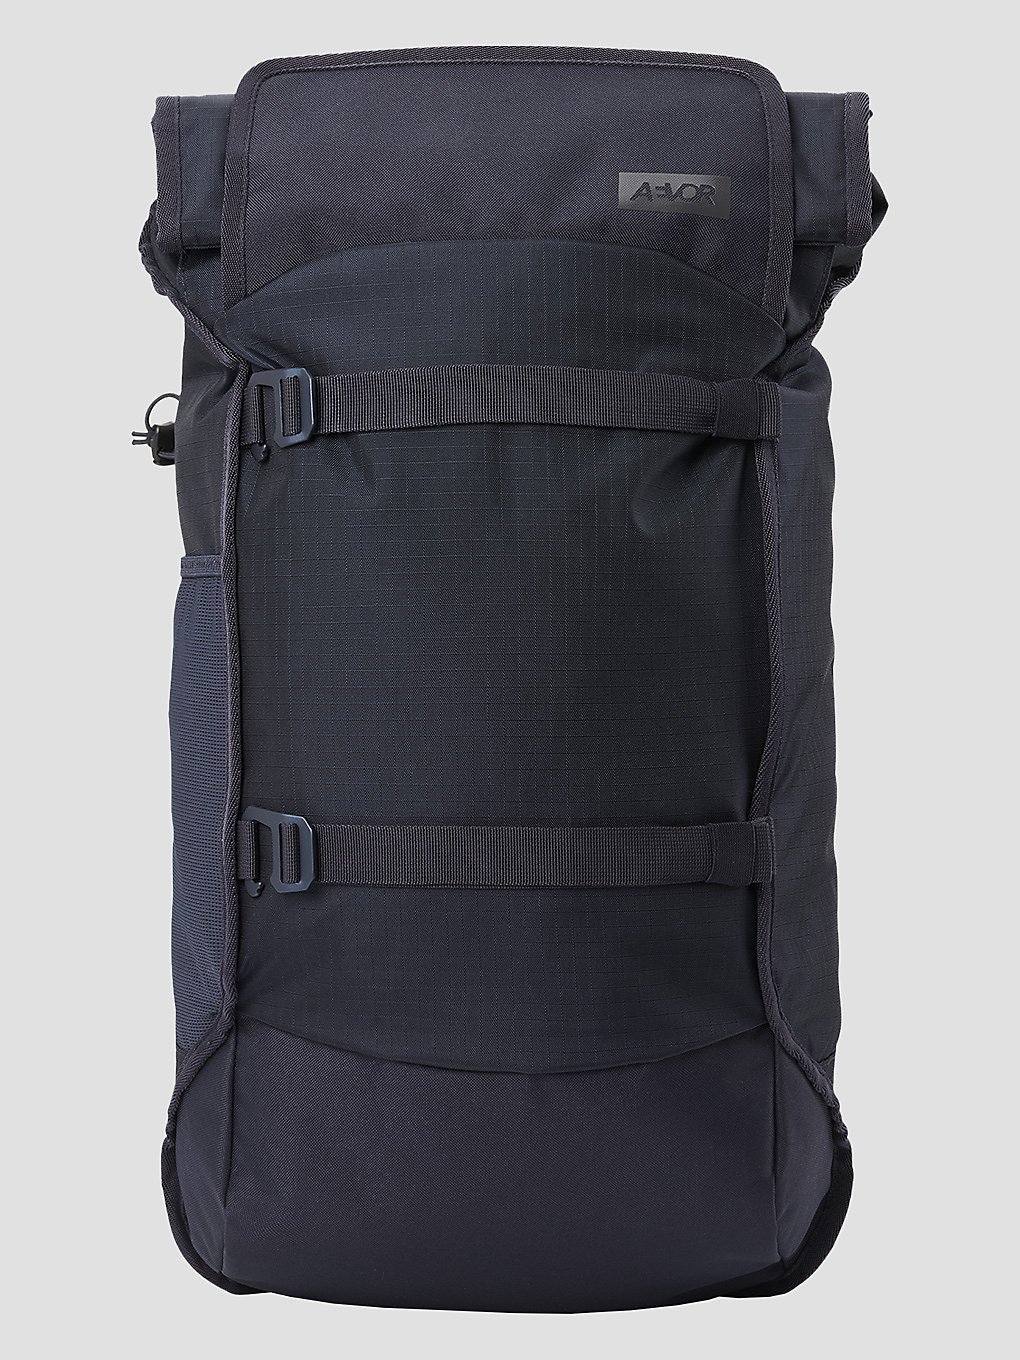 AEVOR Trippack Rucksack blue kaufen